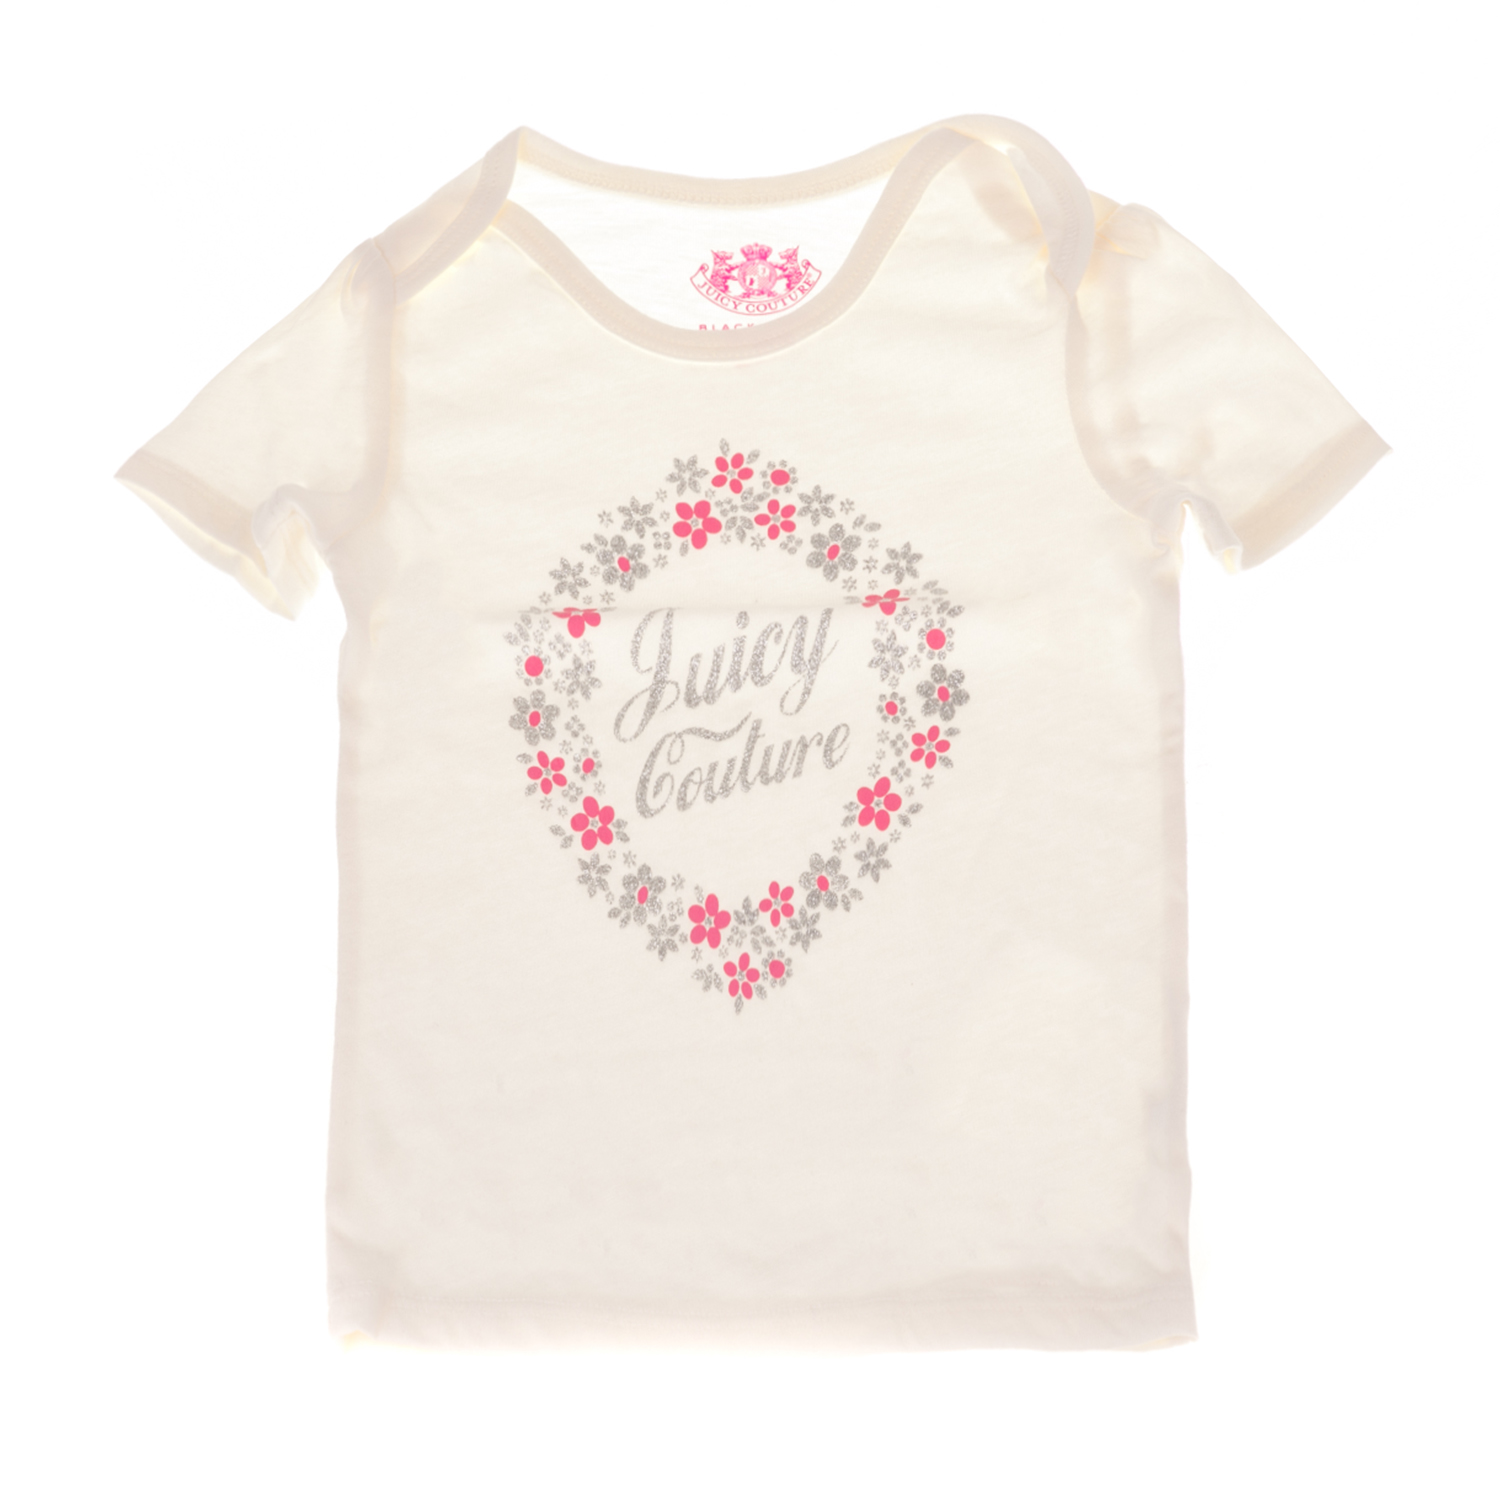 Παιδικά/Baby/Ρούχα/Μπλούζες JUICY COUTURE KIDS - Βρεφικό t-shirt JUICY COUTURE KIDS FLORAL CAMEO λευκό